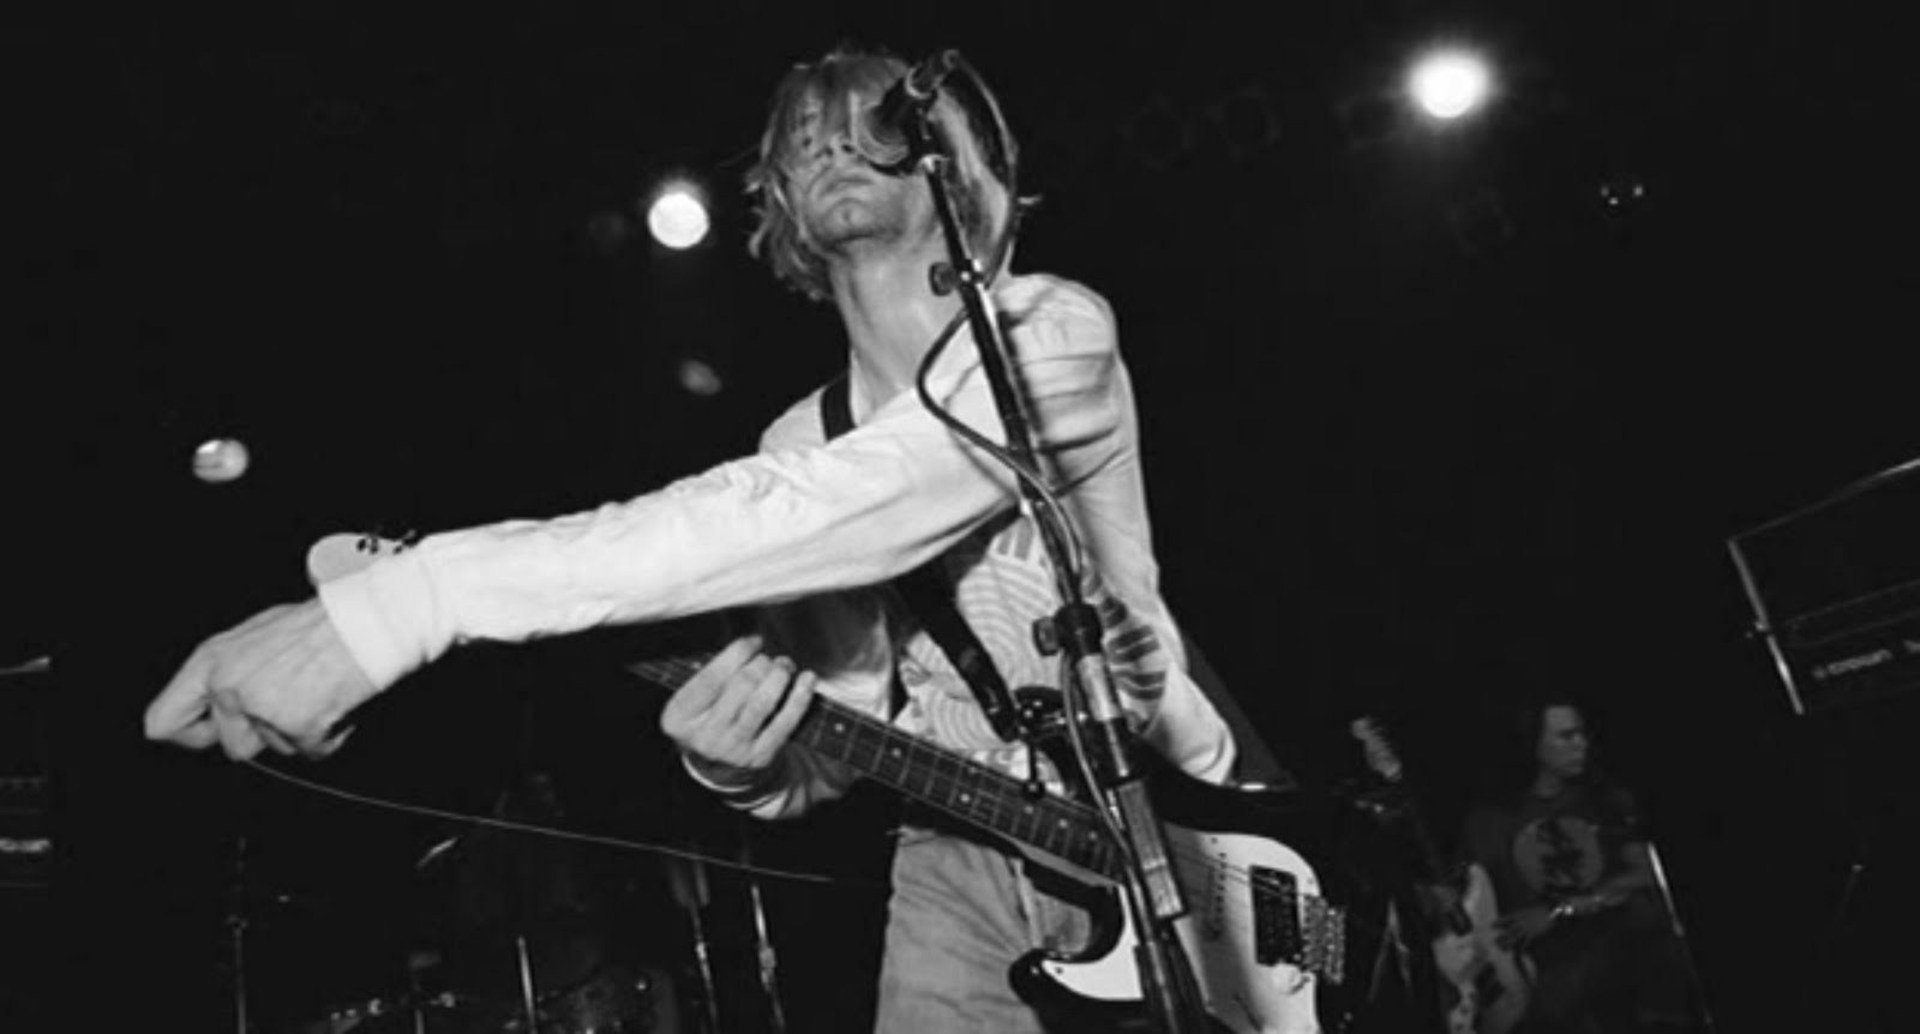 კურტ კობეინი: შვილის შესახებ / Kurt Cobain: About a Son